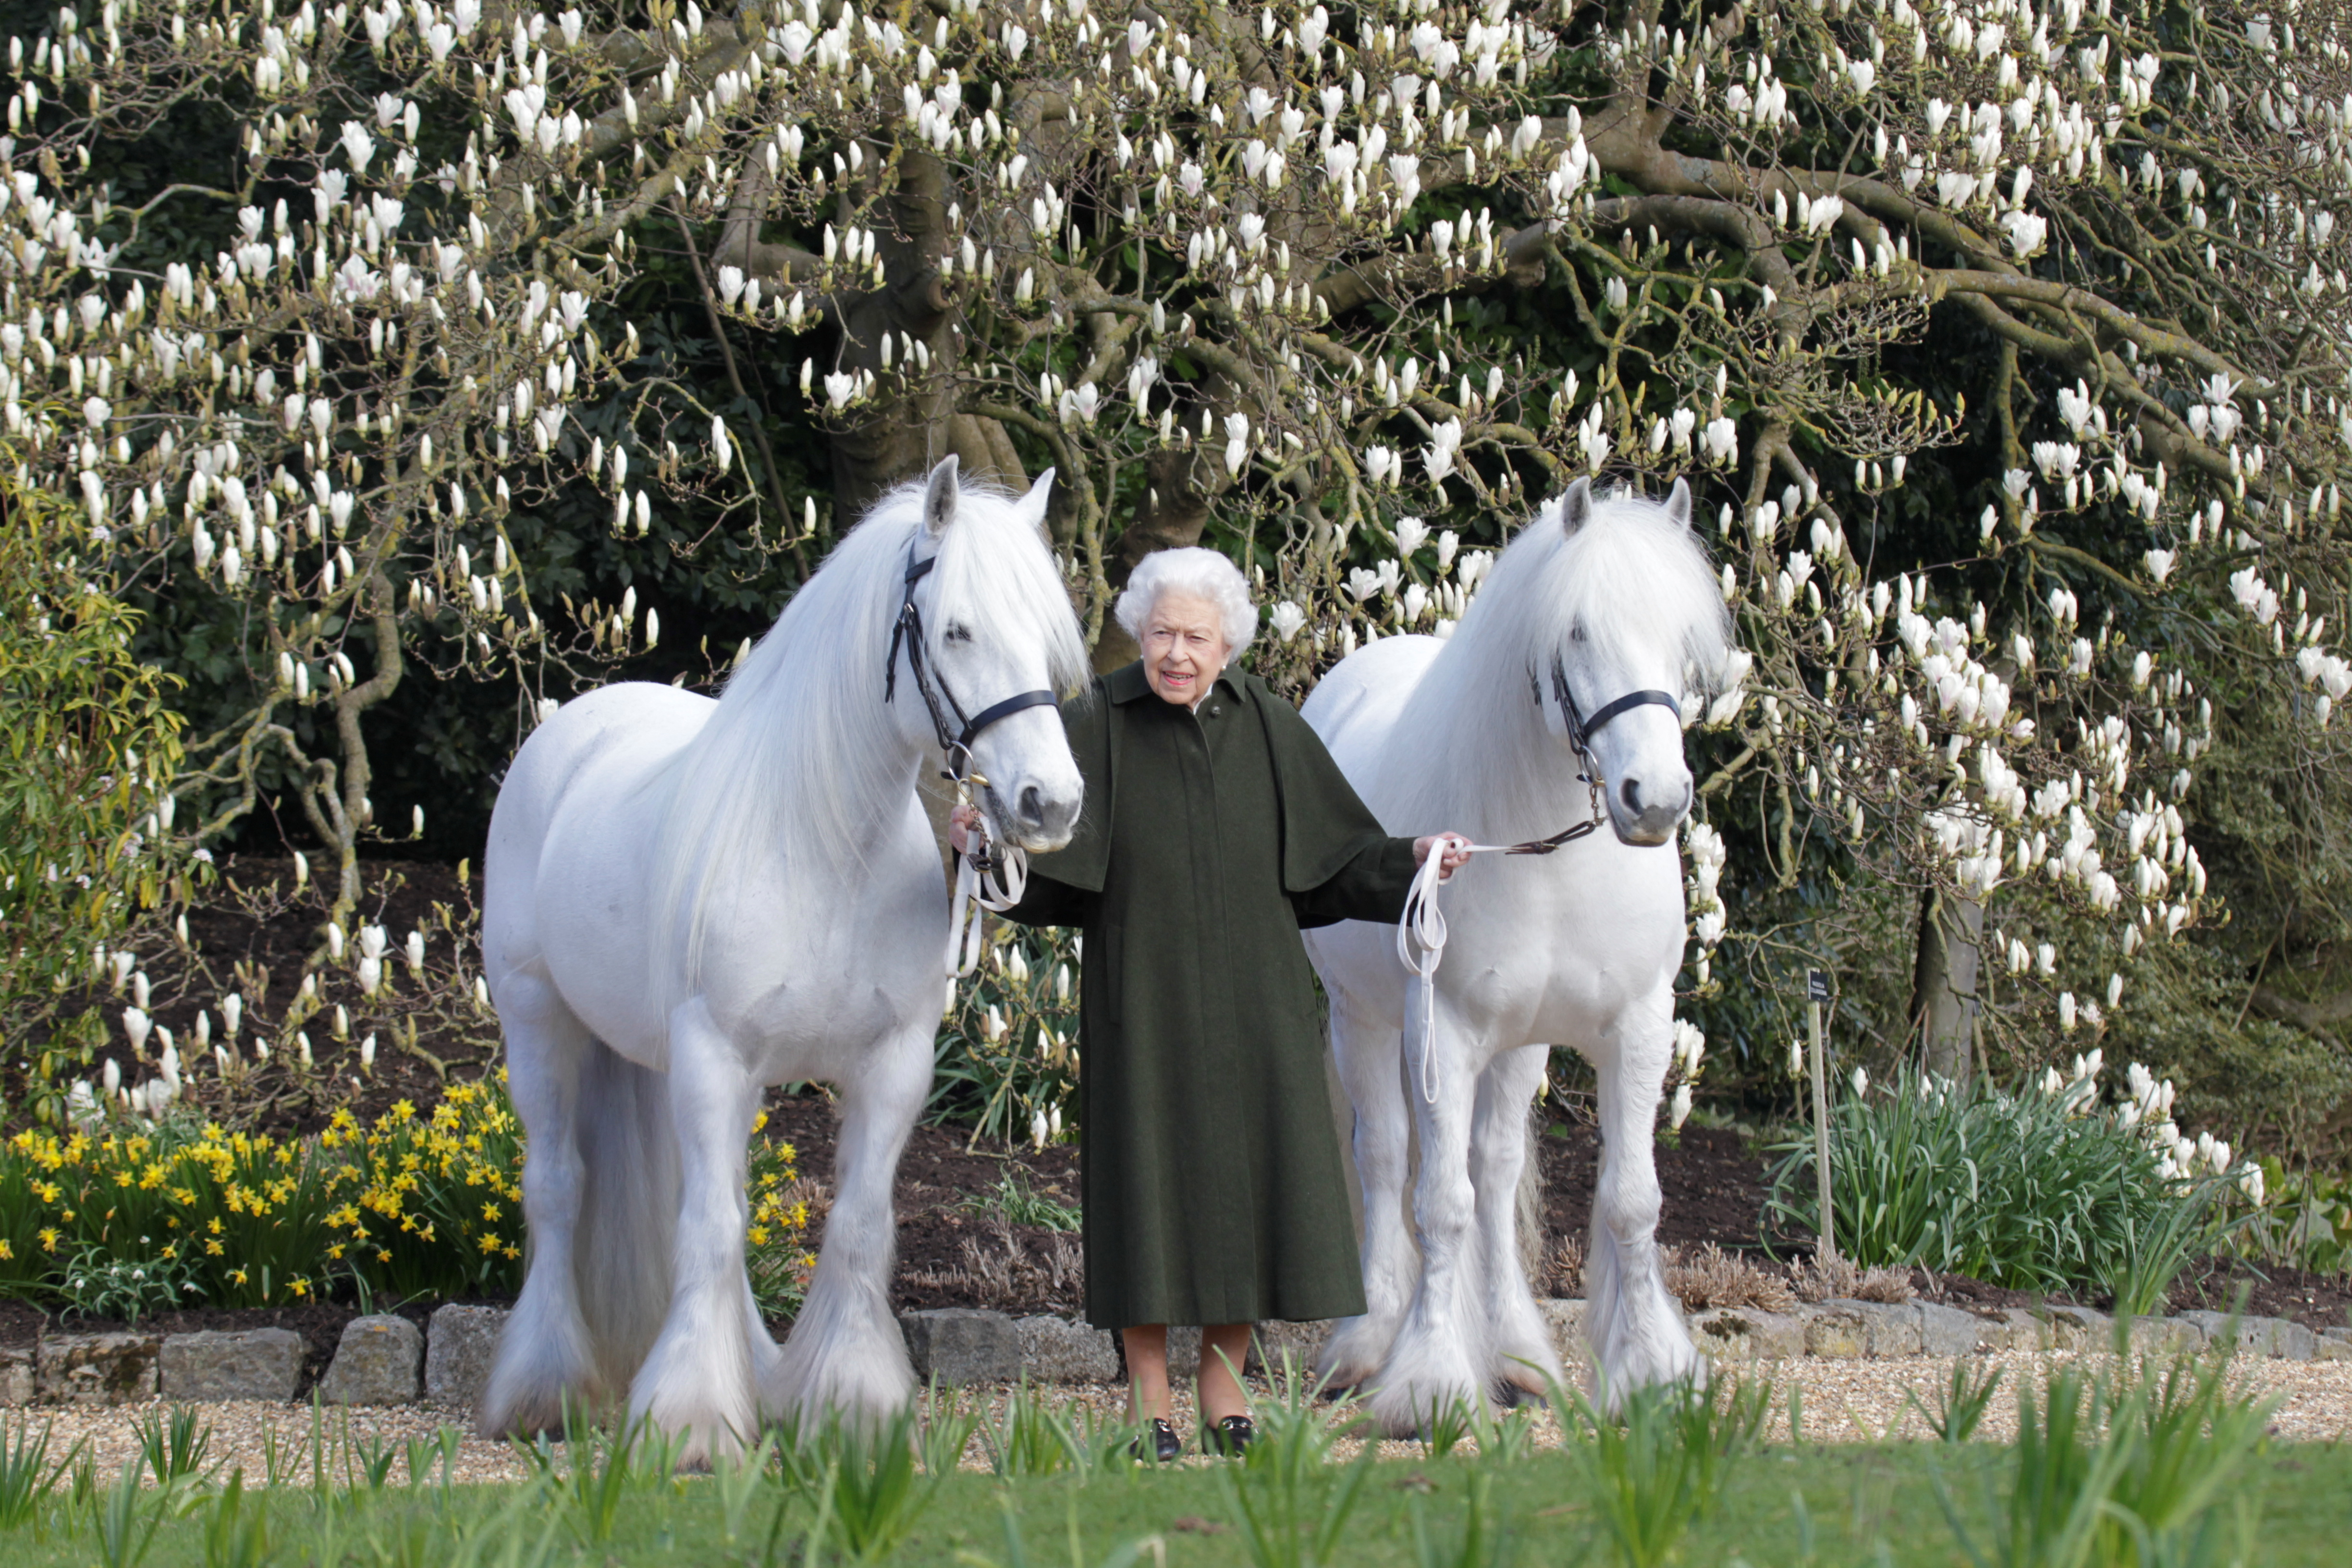 Vezetőszáron ragadott két fell pónit a 96. születésnapján az angol királynő